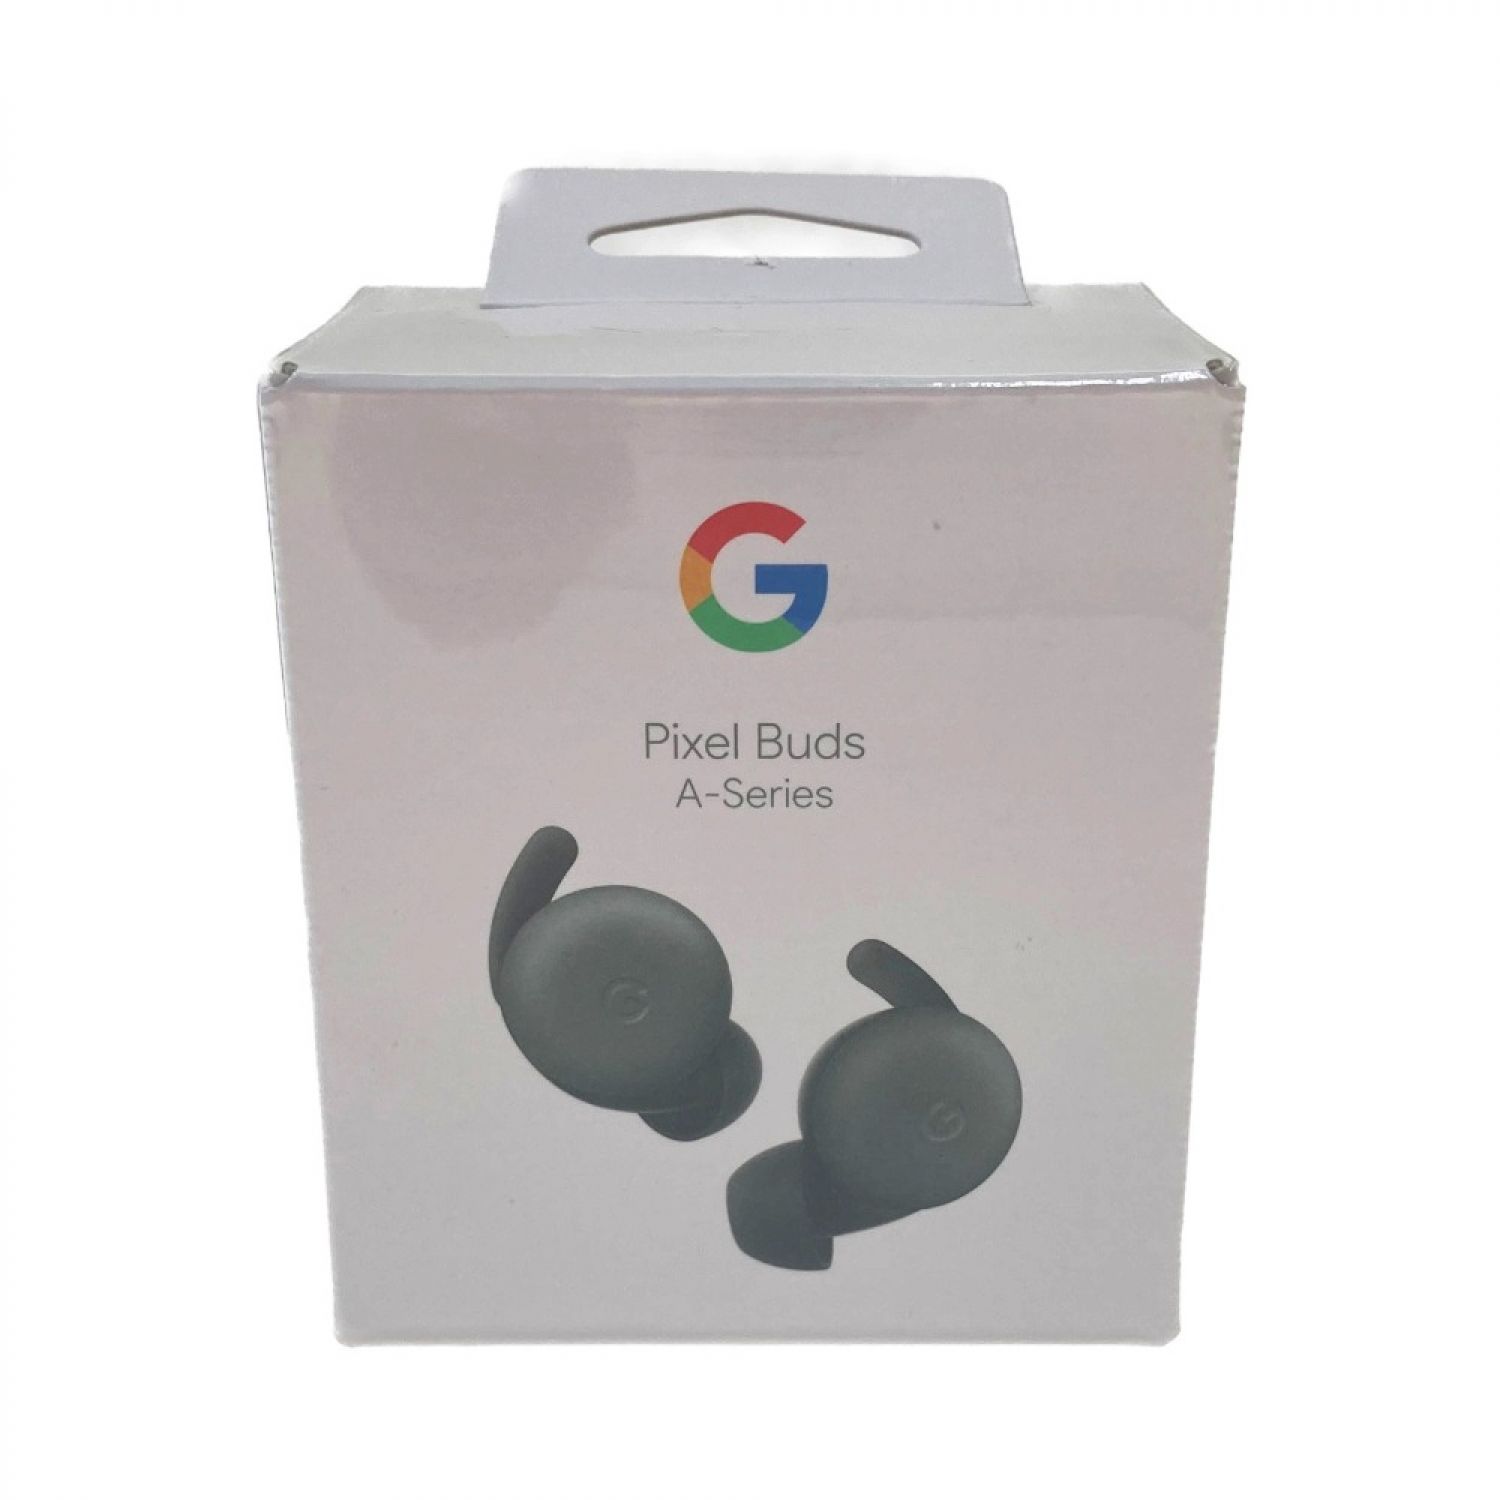 スマートフォン/携帯電話 スマートフォン本体 中古】 Google グーグル フルワイヤレスイヤホン Pixel Buds A-Series 